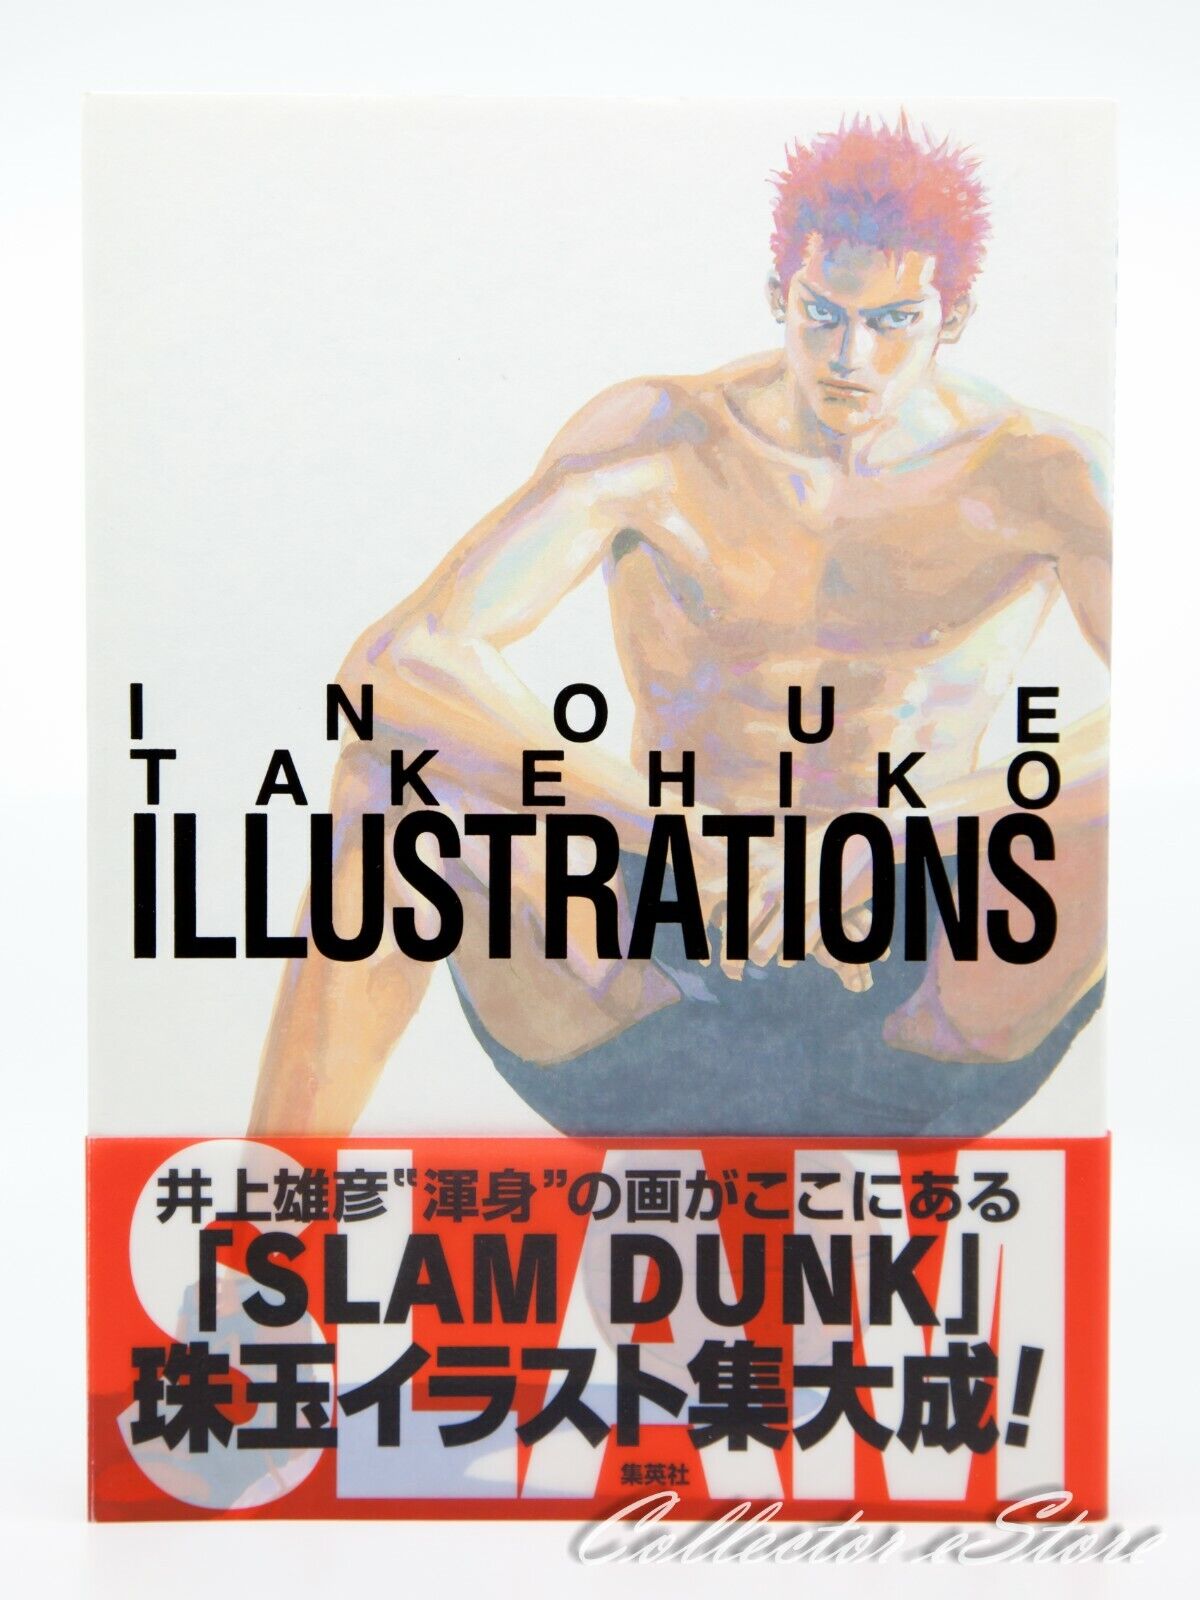 Slam Dunk Inoue Takehiko Illustrations Hardcover Art Book (AIR/DHL)